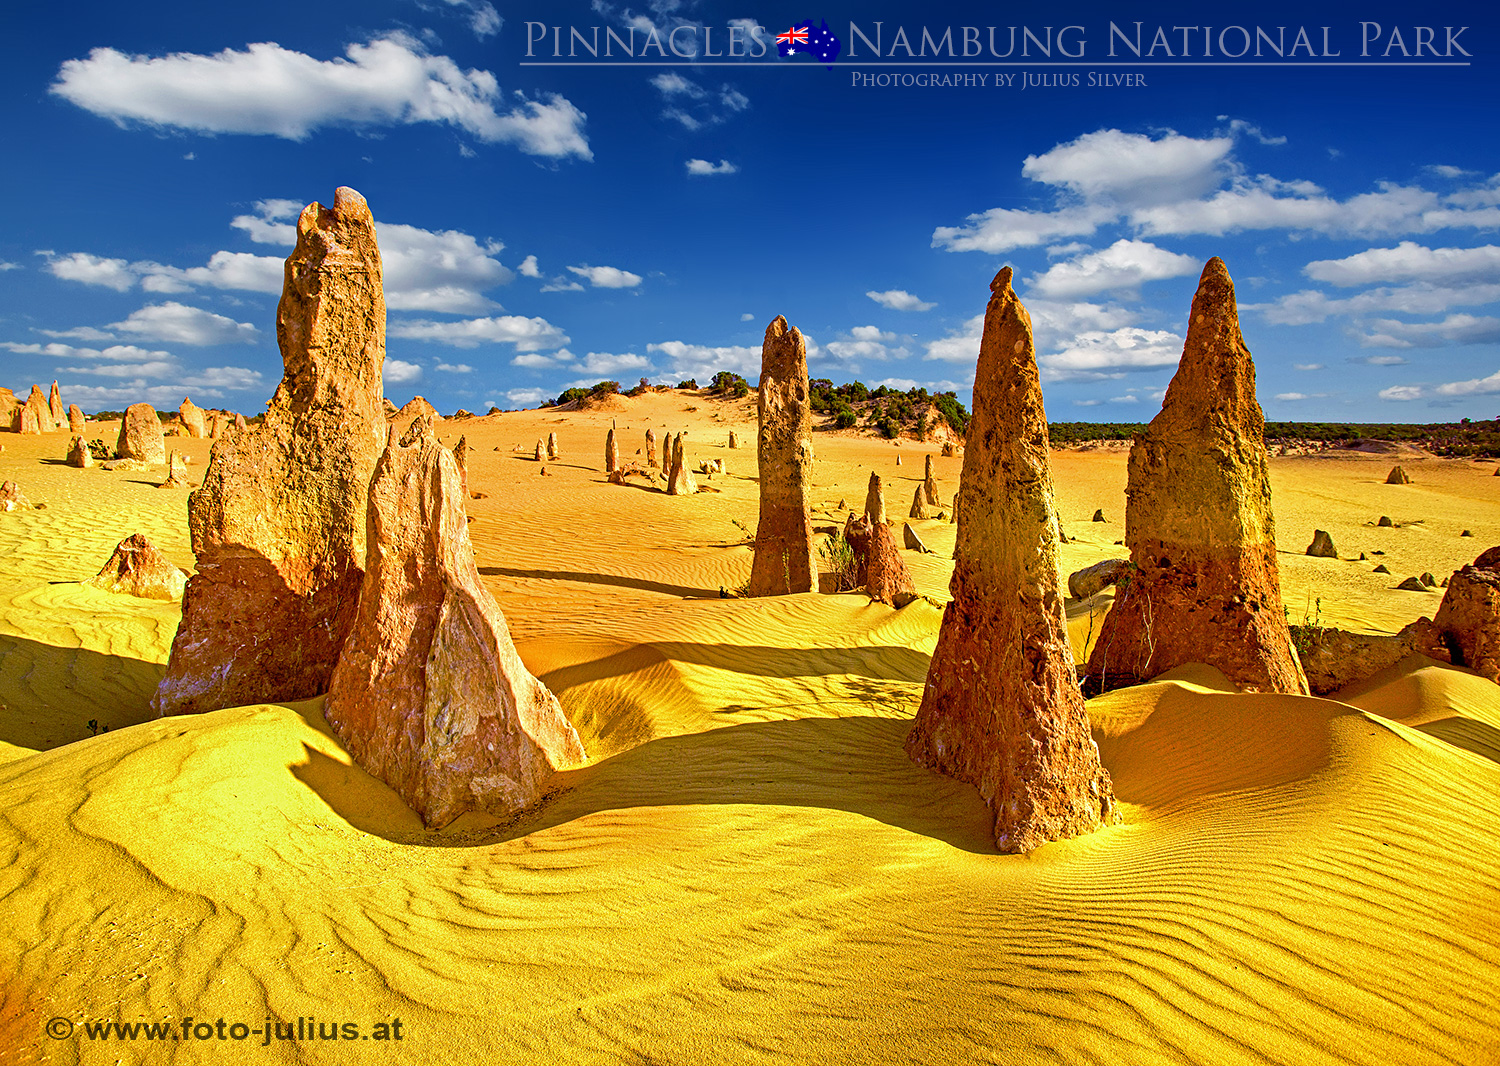 Australia_078a_Pinnacles_Nambung_National_Park.jpg, 1,2MB